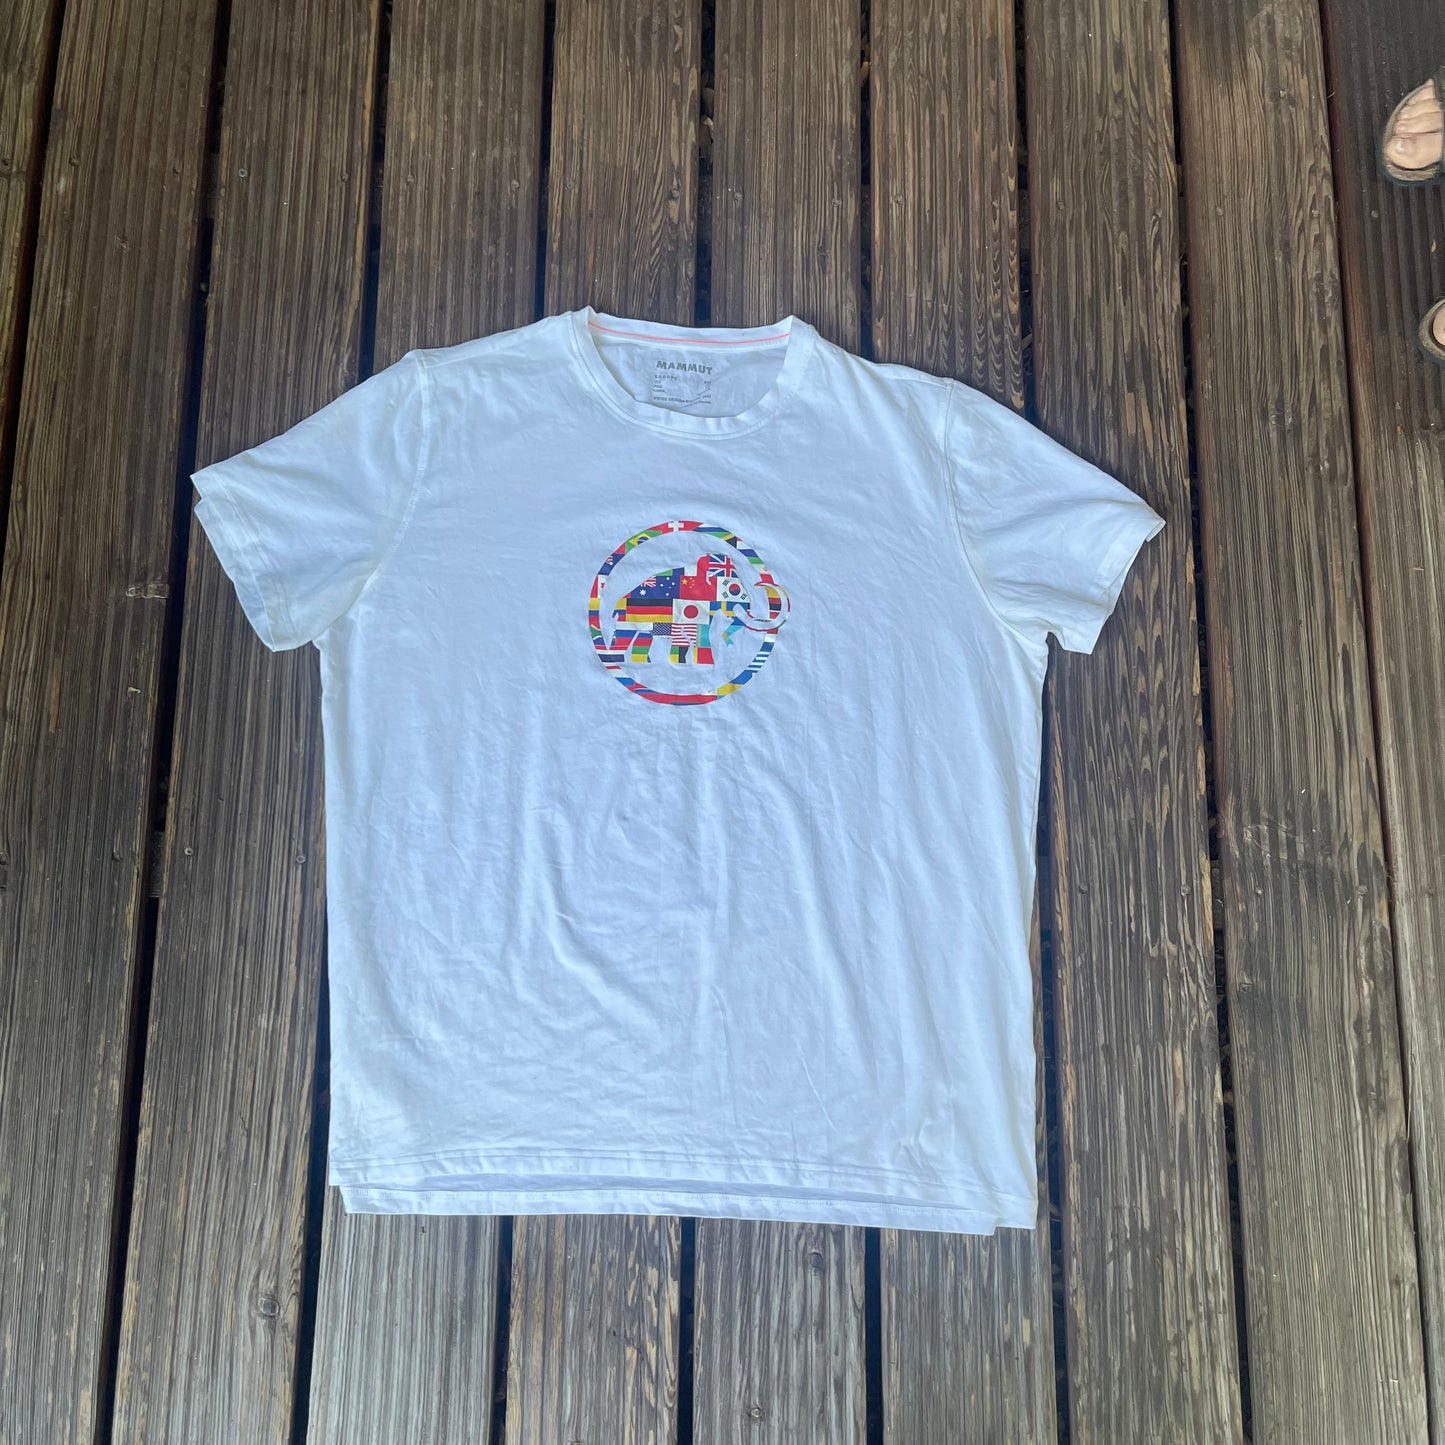 Mammut T-Shirt (Herren XXL) weiß mit Brust-Logo